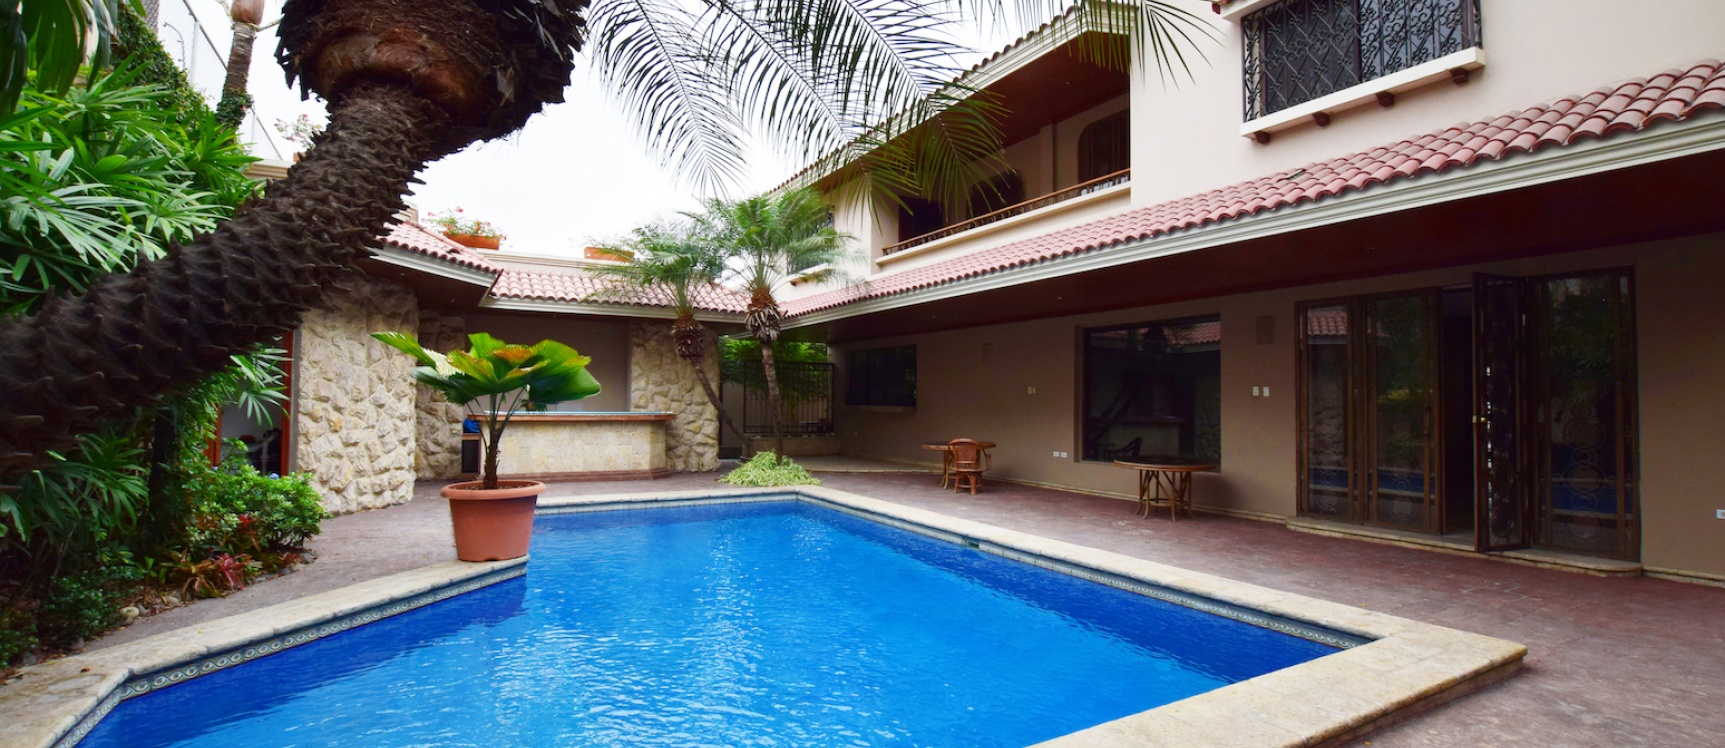 GeoBienes - Casa en venta ubicada en Olivos I, Ceibos, Norte de Guayaquil - Plusvalia Guayaquil Casas de venta y alquiler Inmobiliaria Ecuador